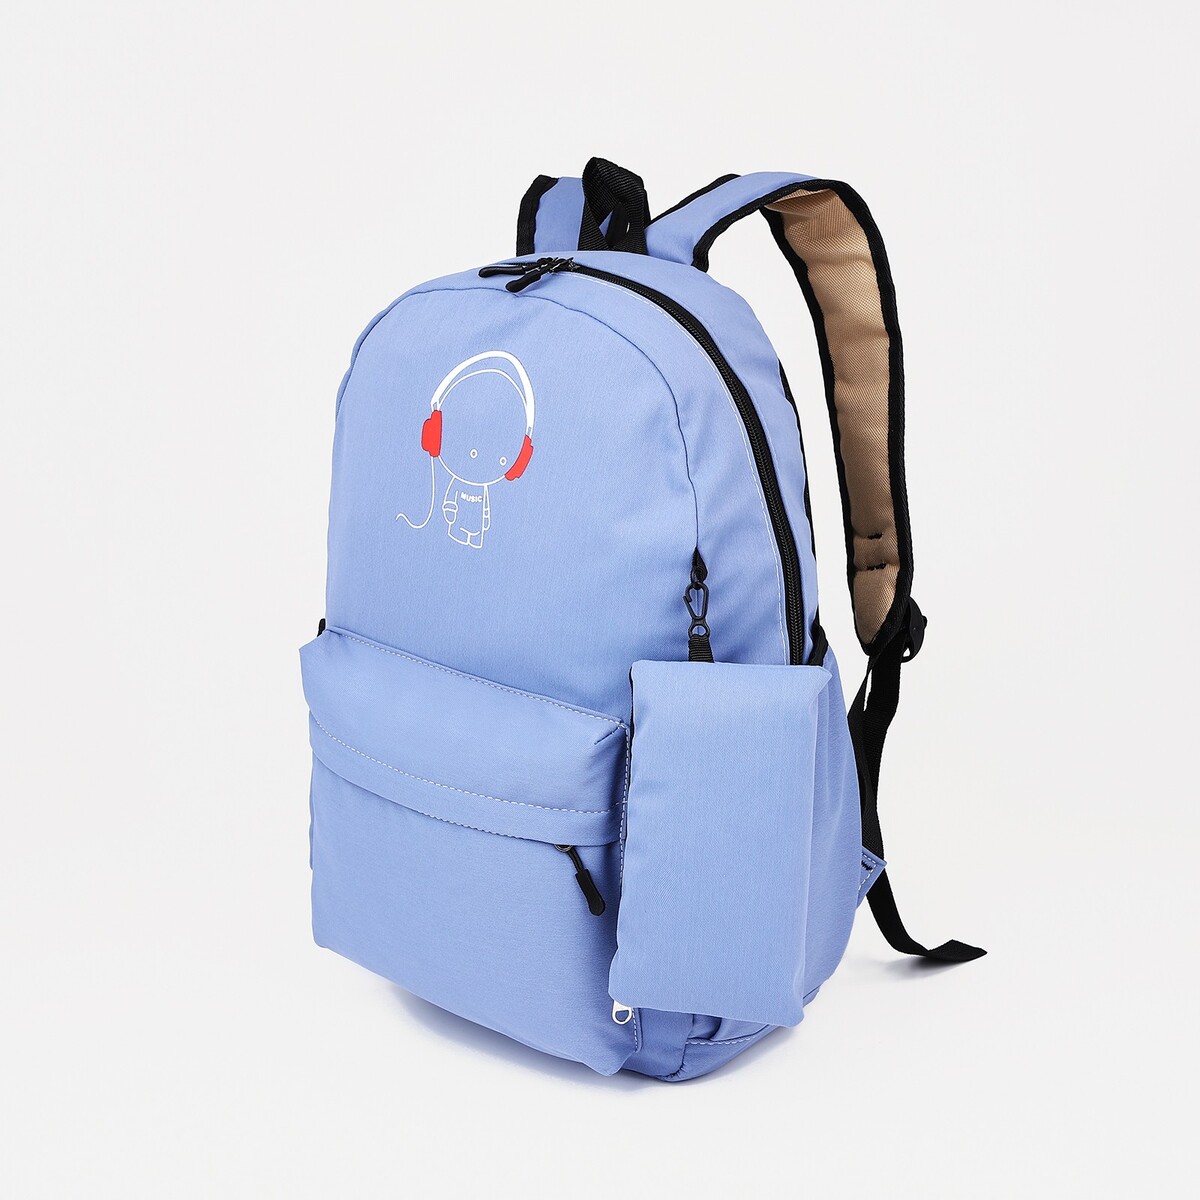 Рюкзак школьный из текстиля на молнии, 3 кармана, кошелек, цвет сиреневый рюкзак школьный из текстиля на молнии 4 кармана сиреневый